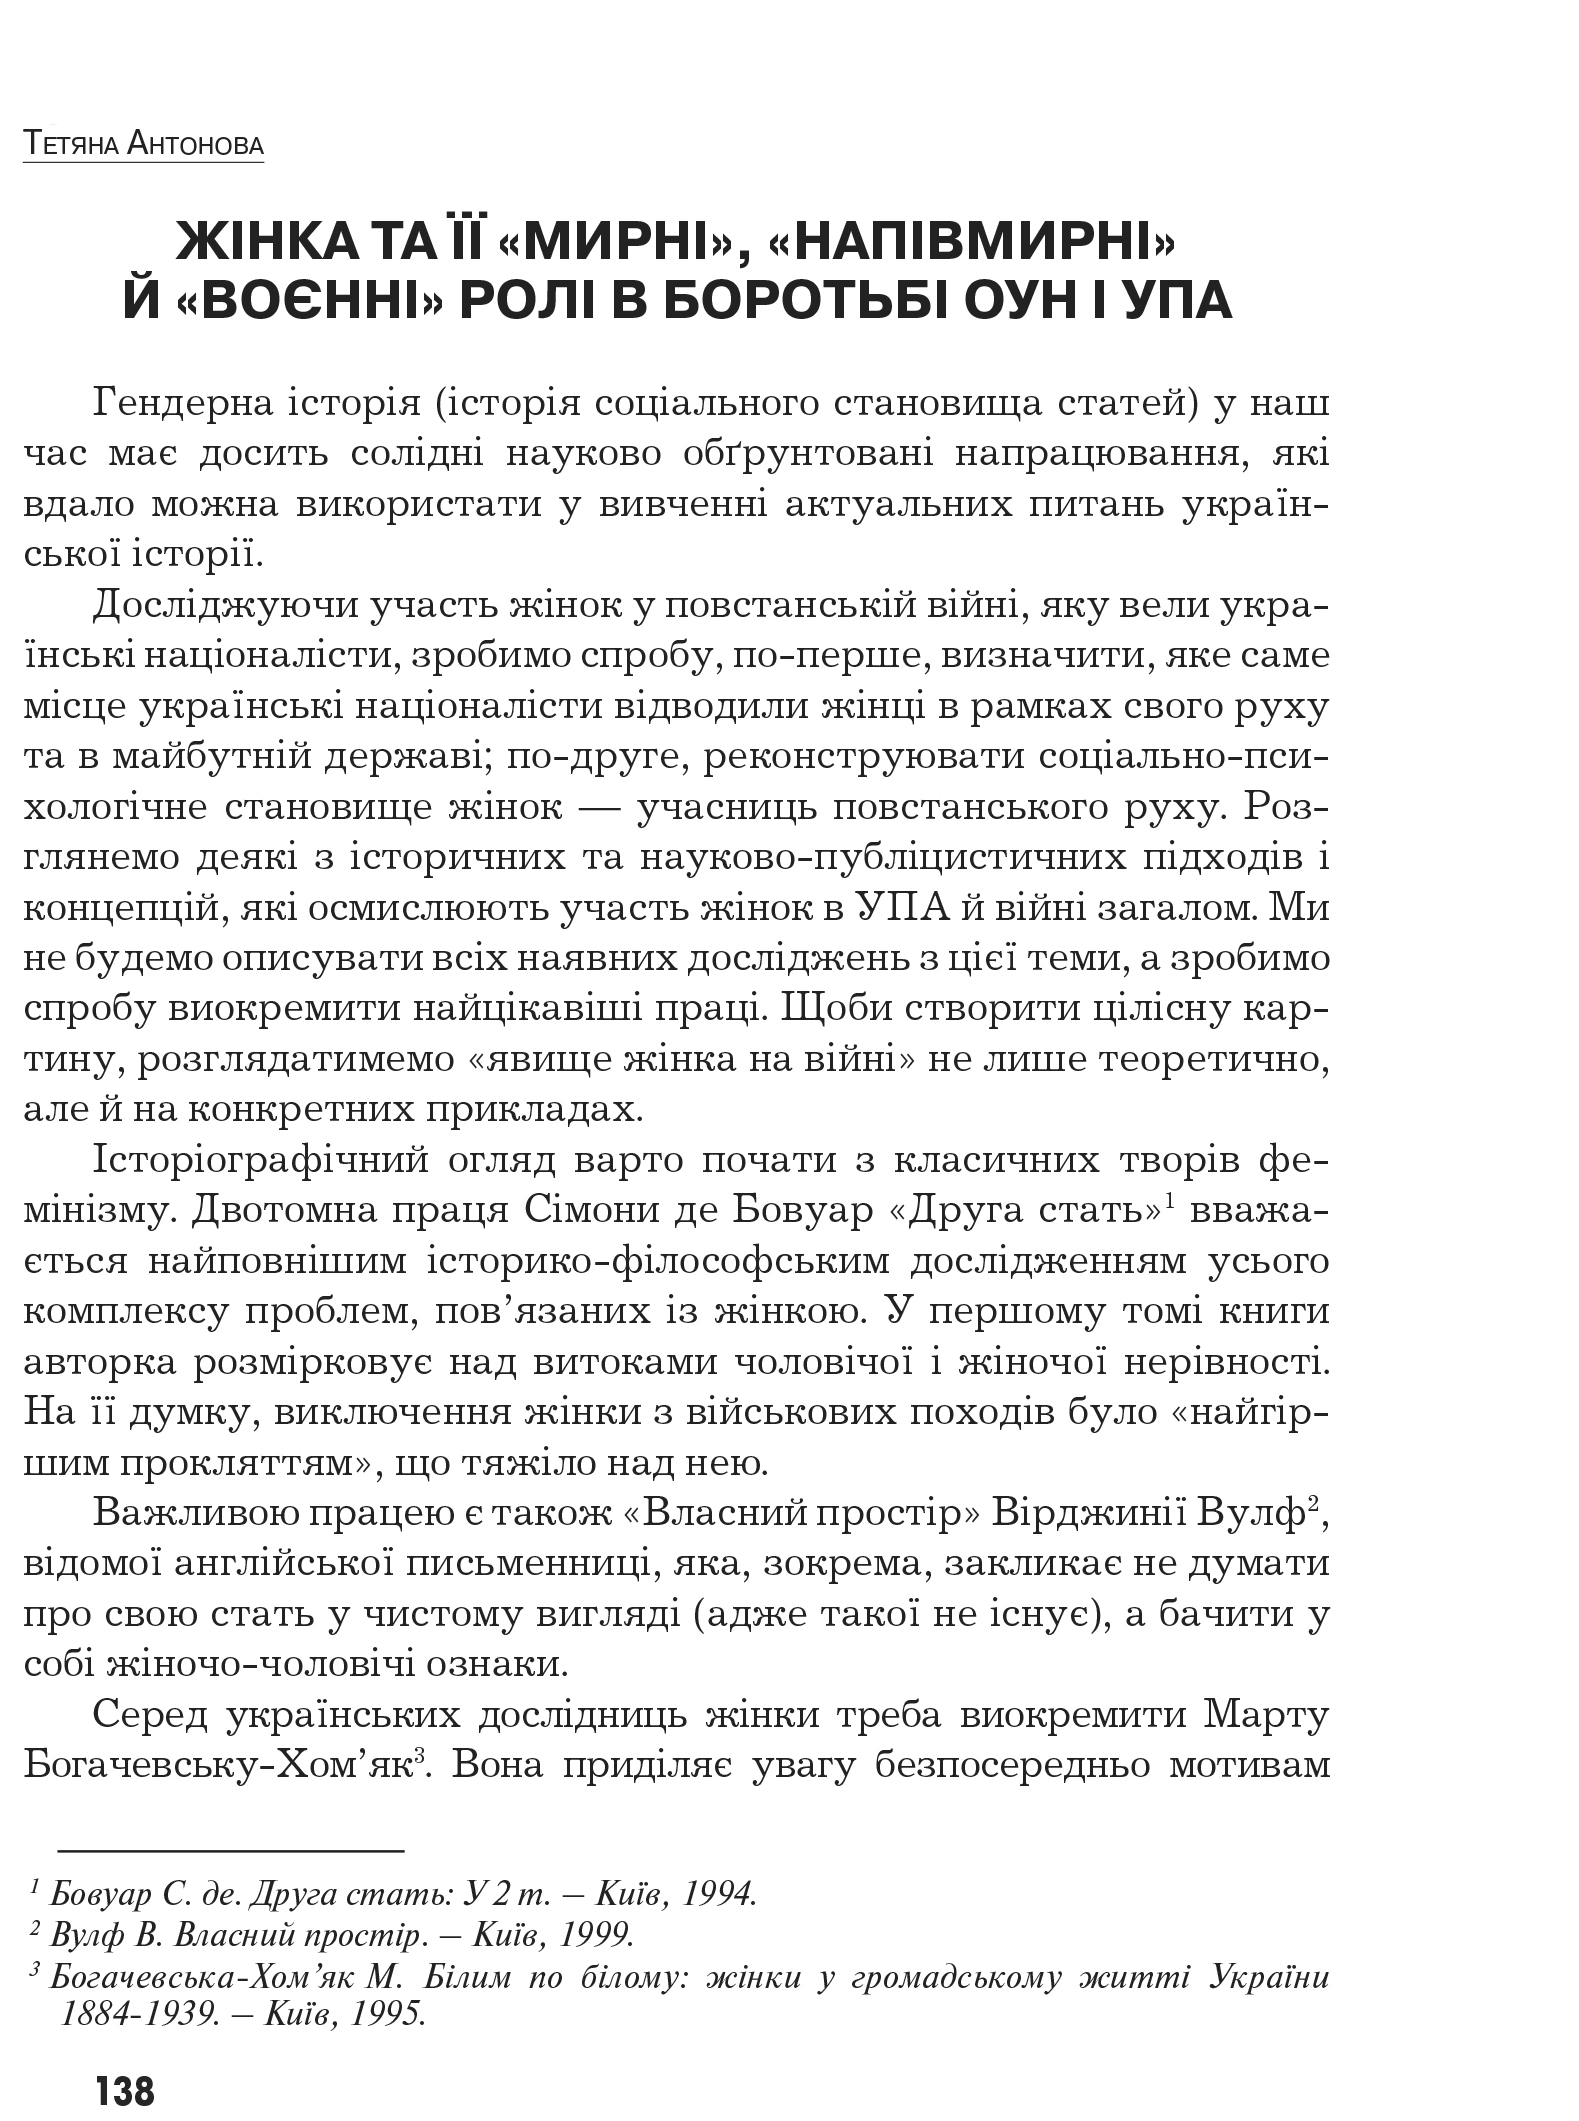 Український визвольний рух №9, ст. 138 - 146